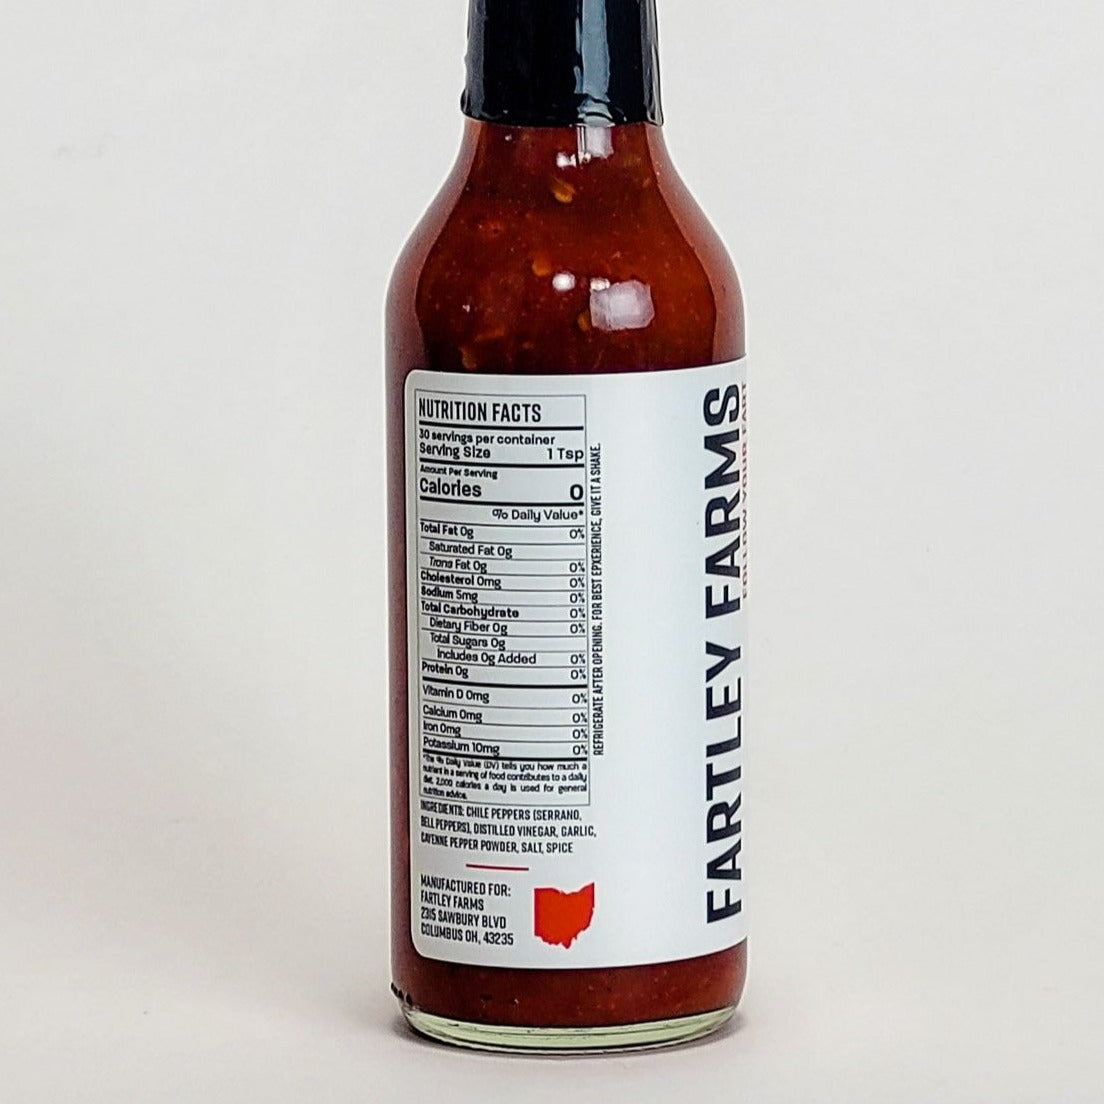 fartley farms 2 serrano garlic hot sauce nutrition facts